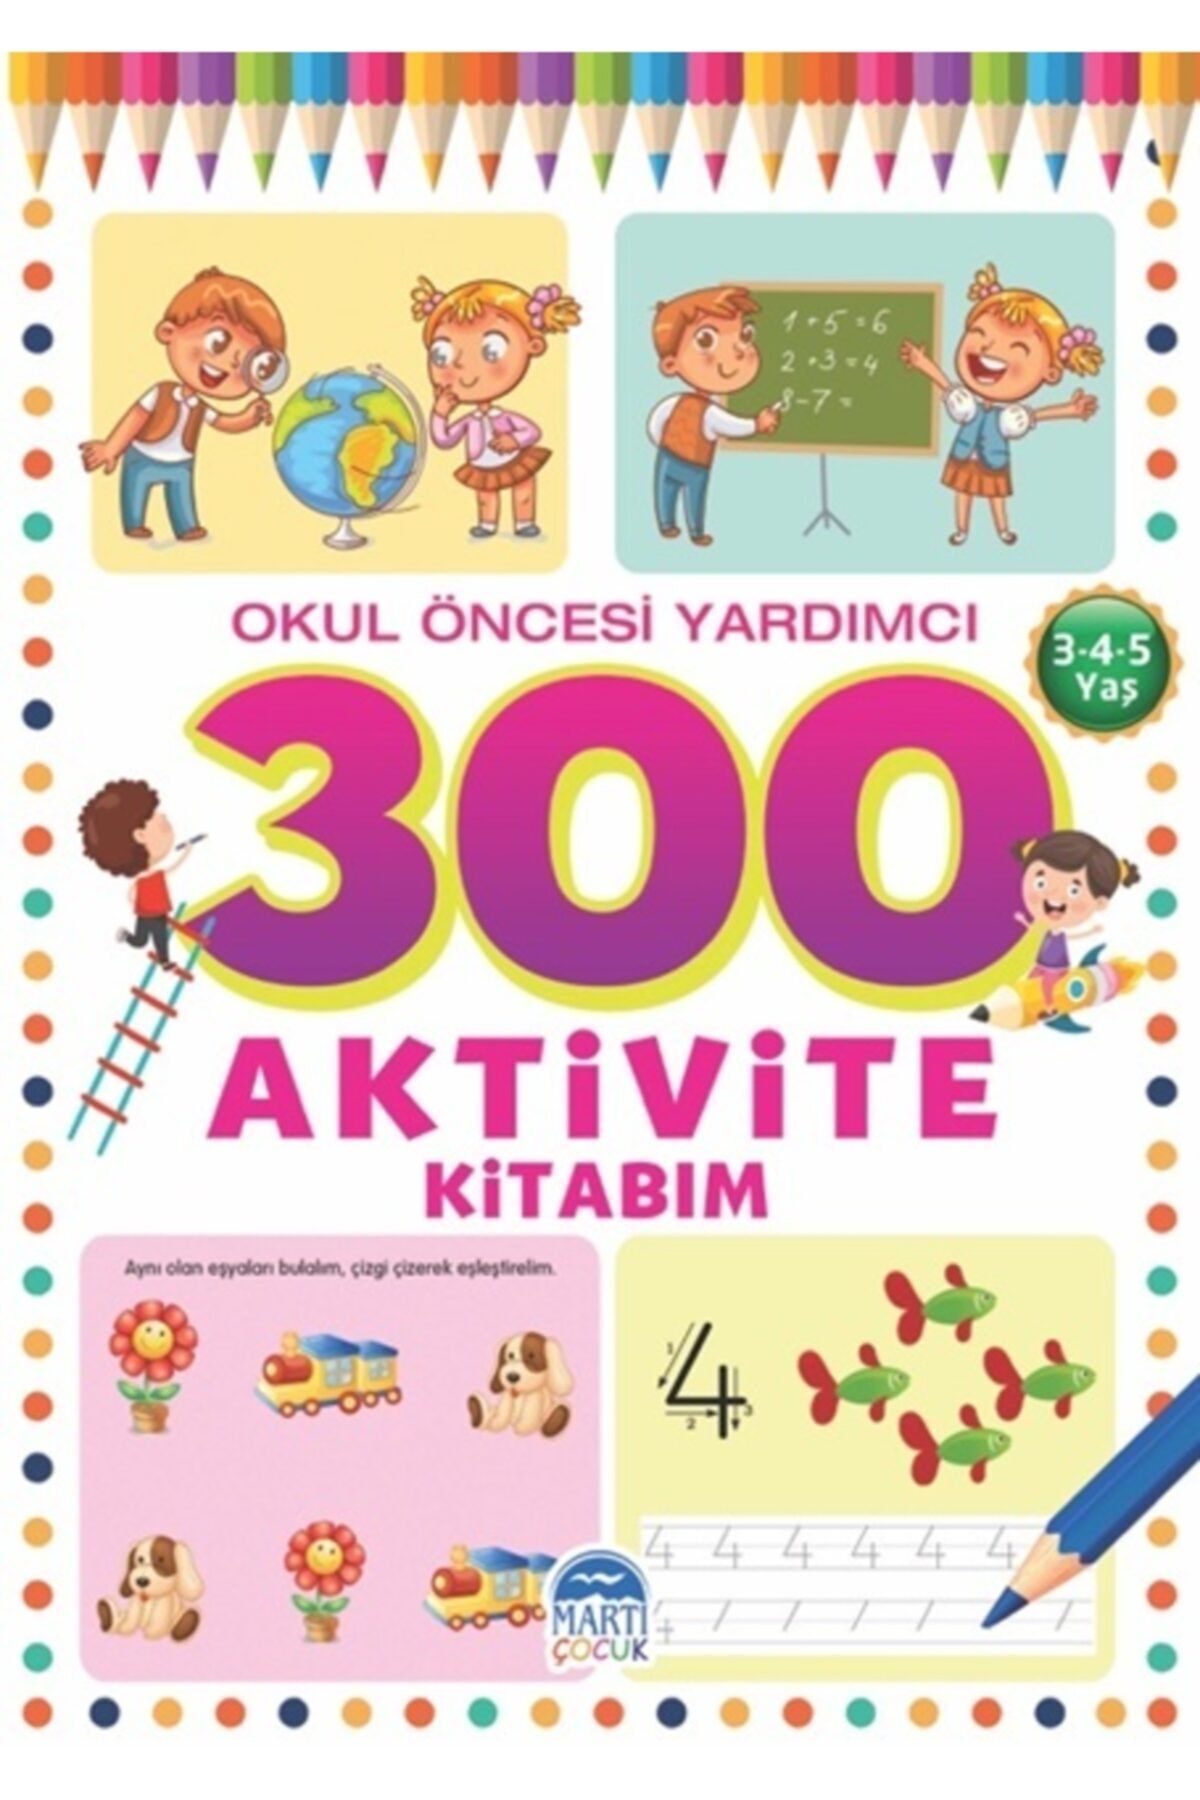 Martı Yayınları 300 Aktivite Kitabım - Okul Öncesi Yardımcı (3-4-5 Yaş) - Martı Çocuk Yayınları - Tamer Topaloğlu Ki